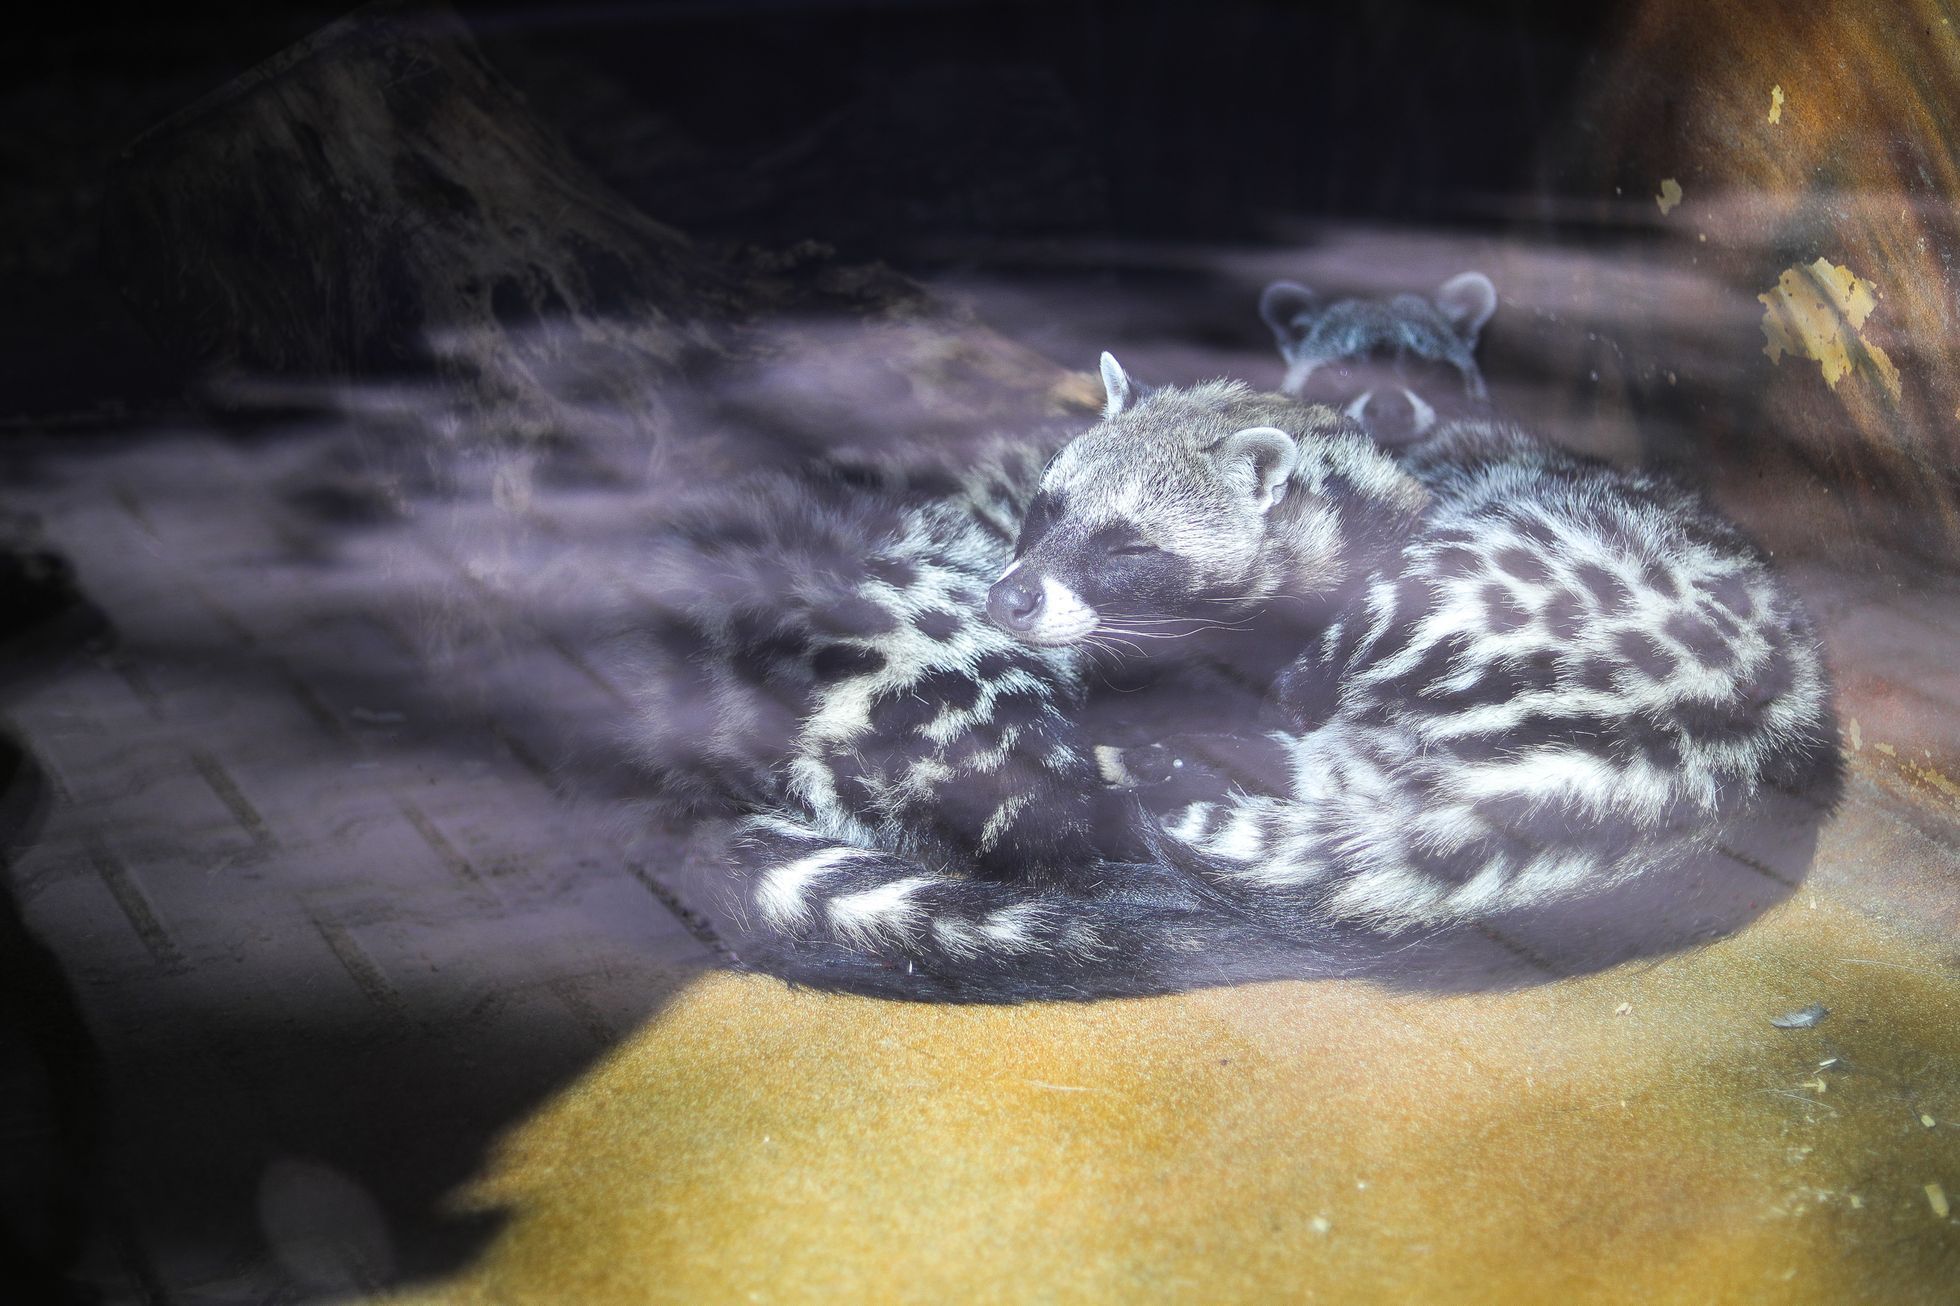 Uzavřená Zoo Dvůr Králové kvůli nouzovému stavu